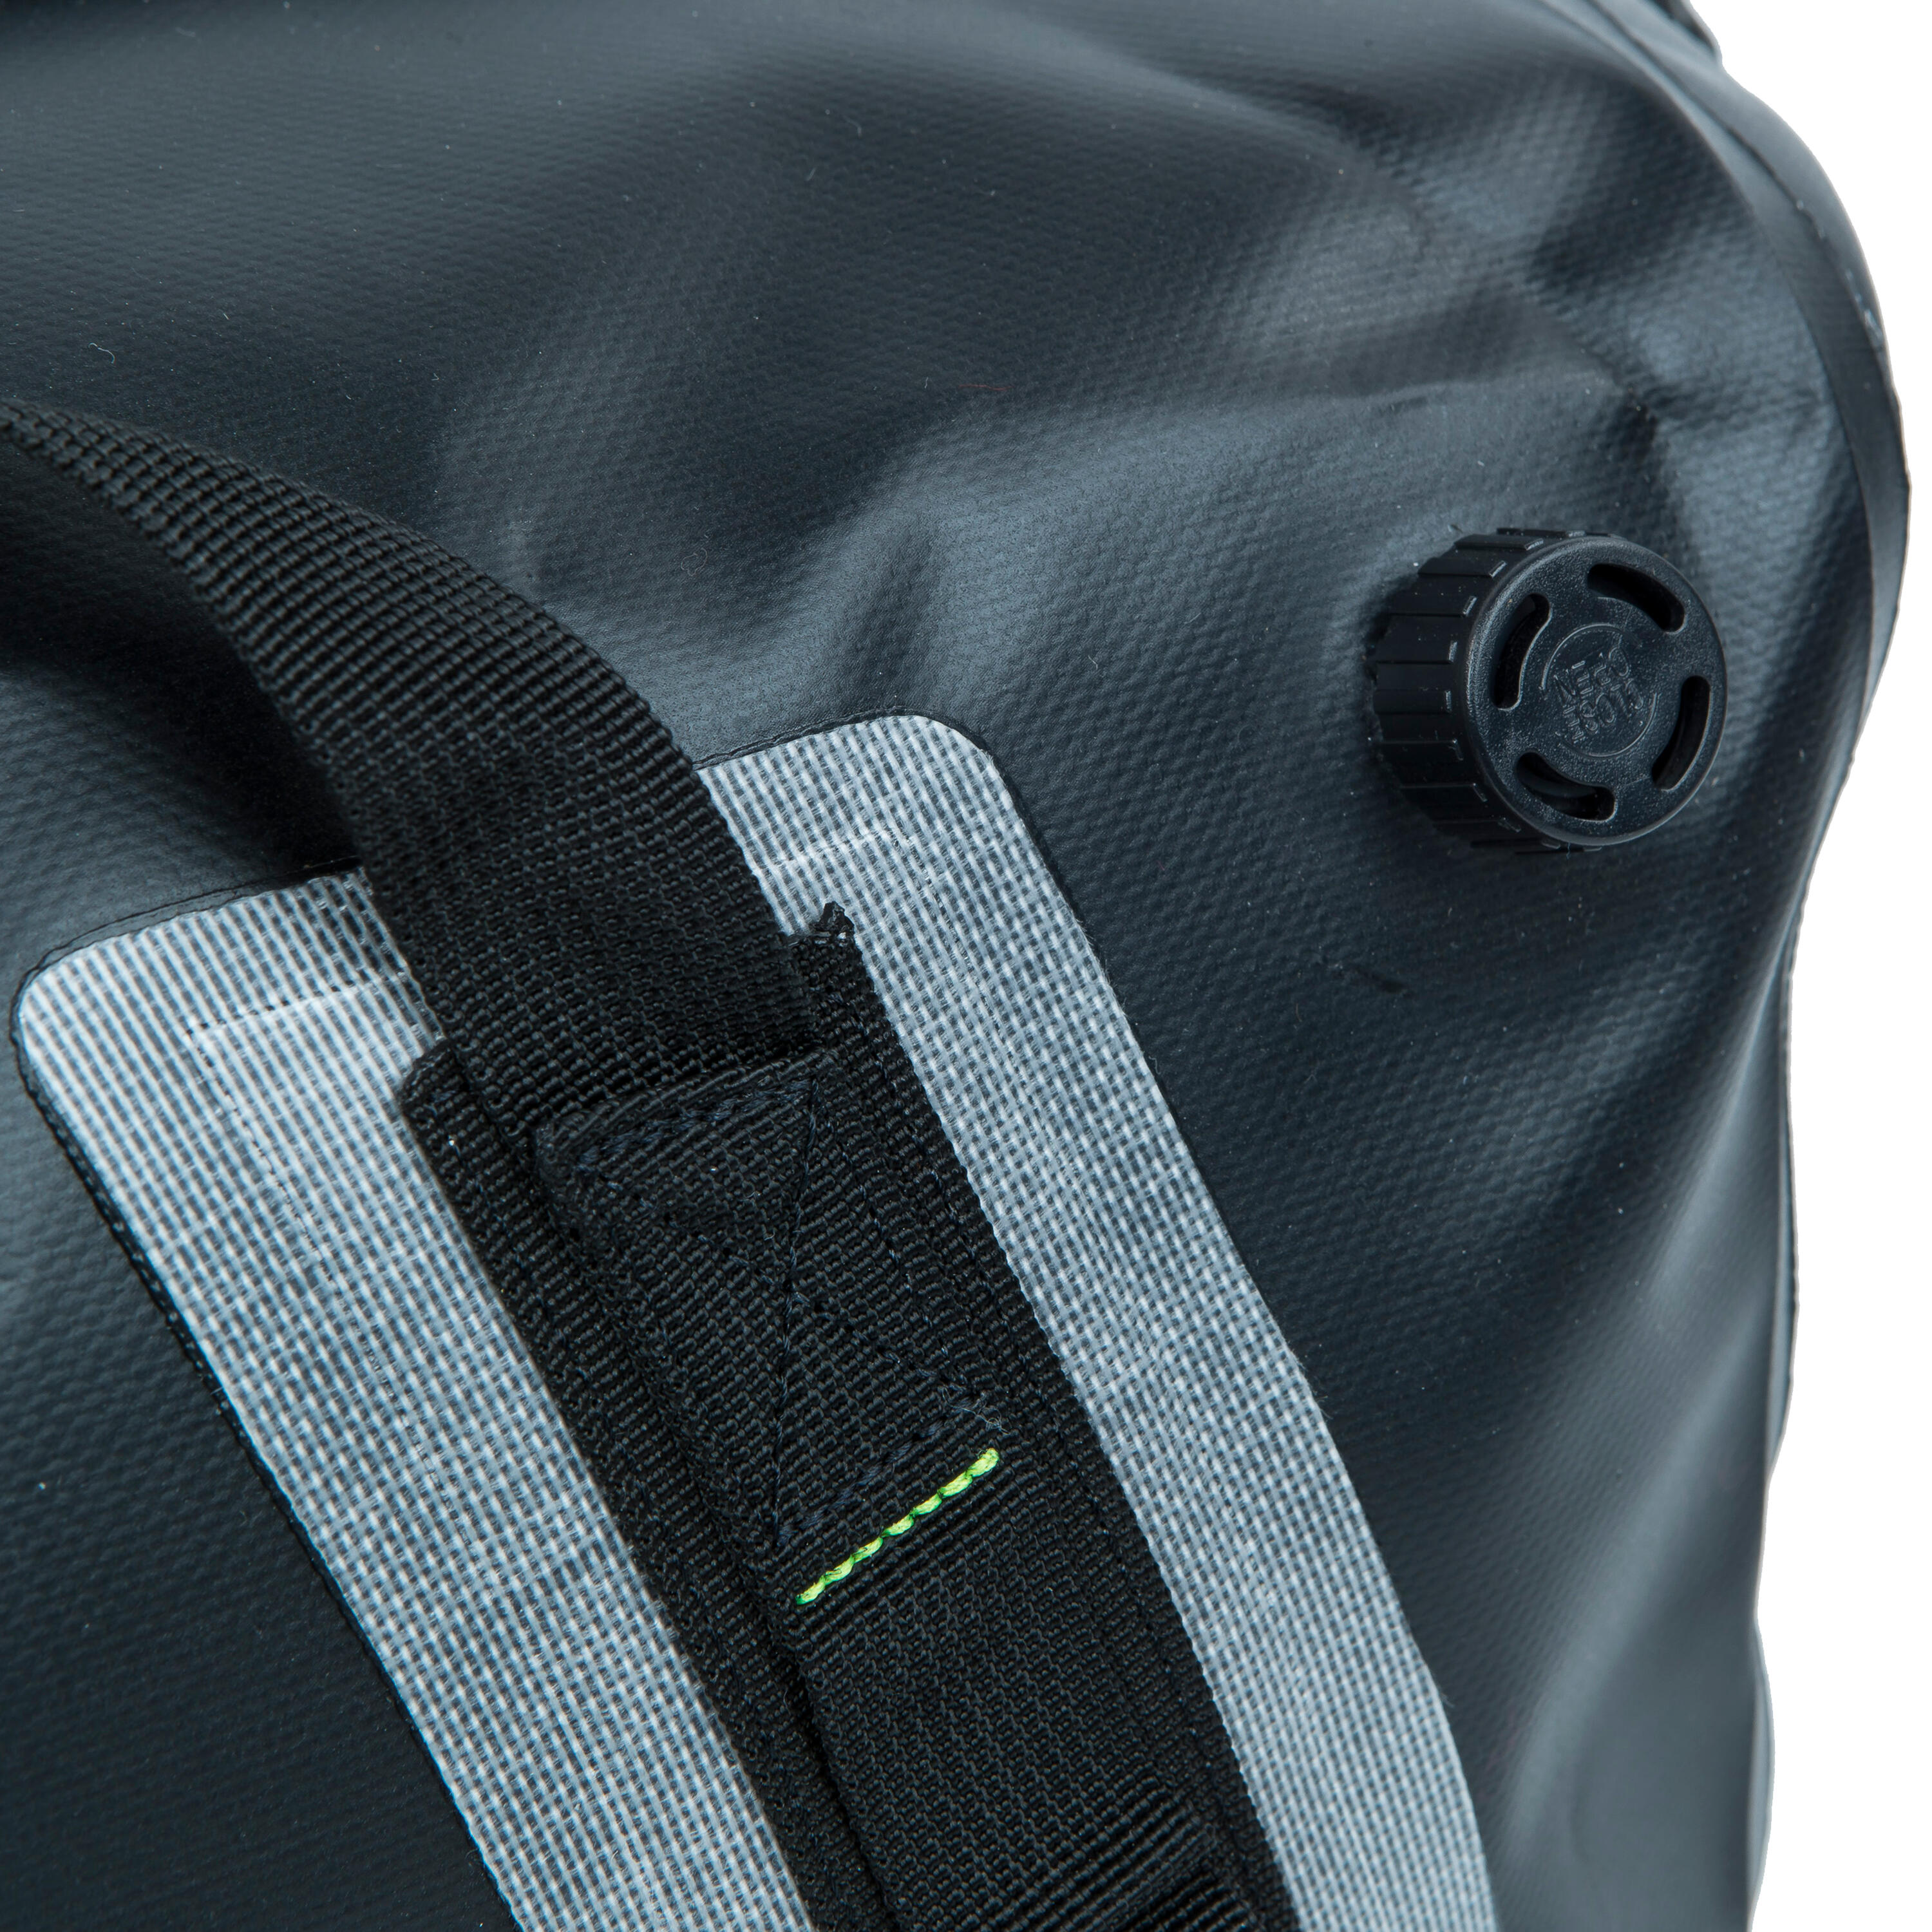 Waterproof duffle bag - travel bag 60 L black 6/8